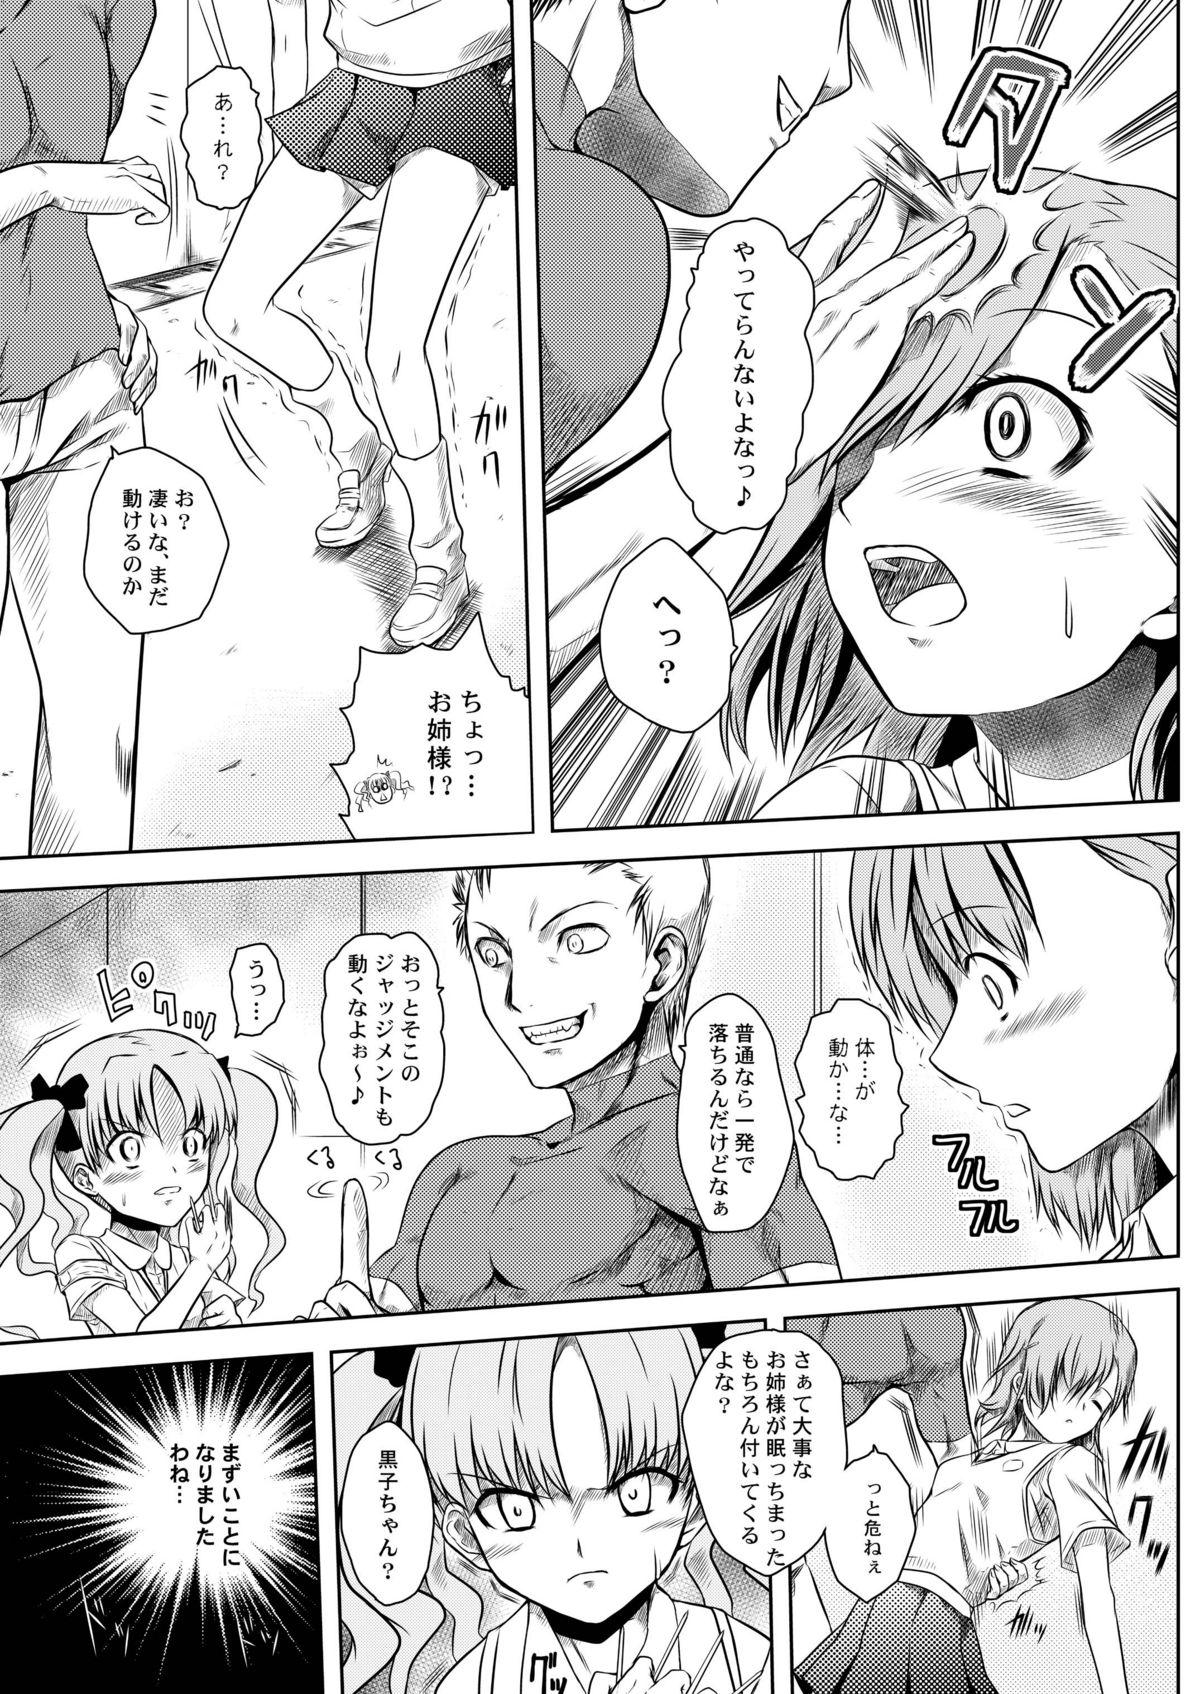 Lima Toaru Tokumei Kibou ni Goyoujin - Toaru kagaku no railgun Threesome - Page 6